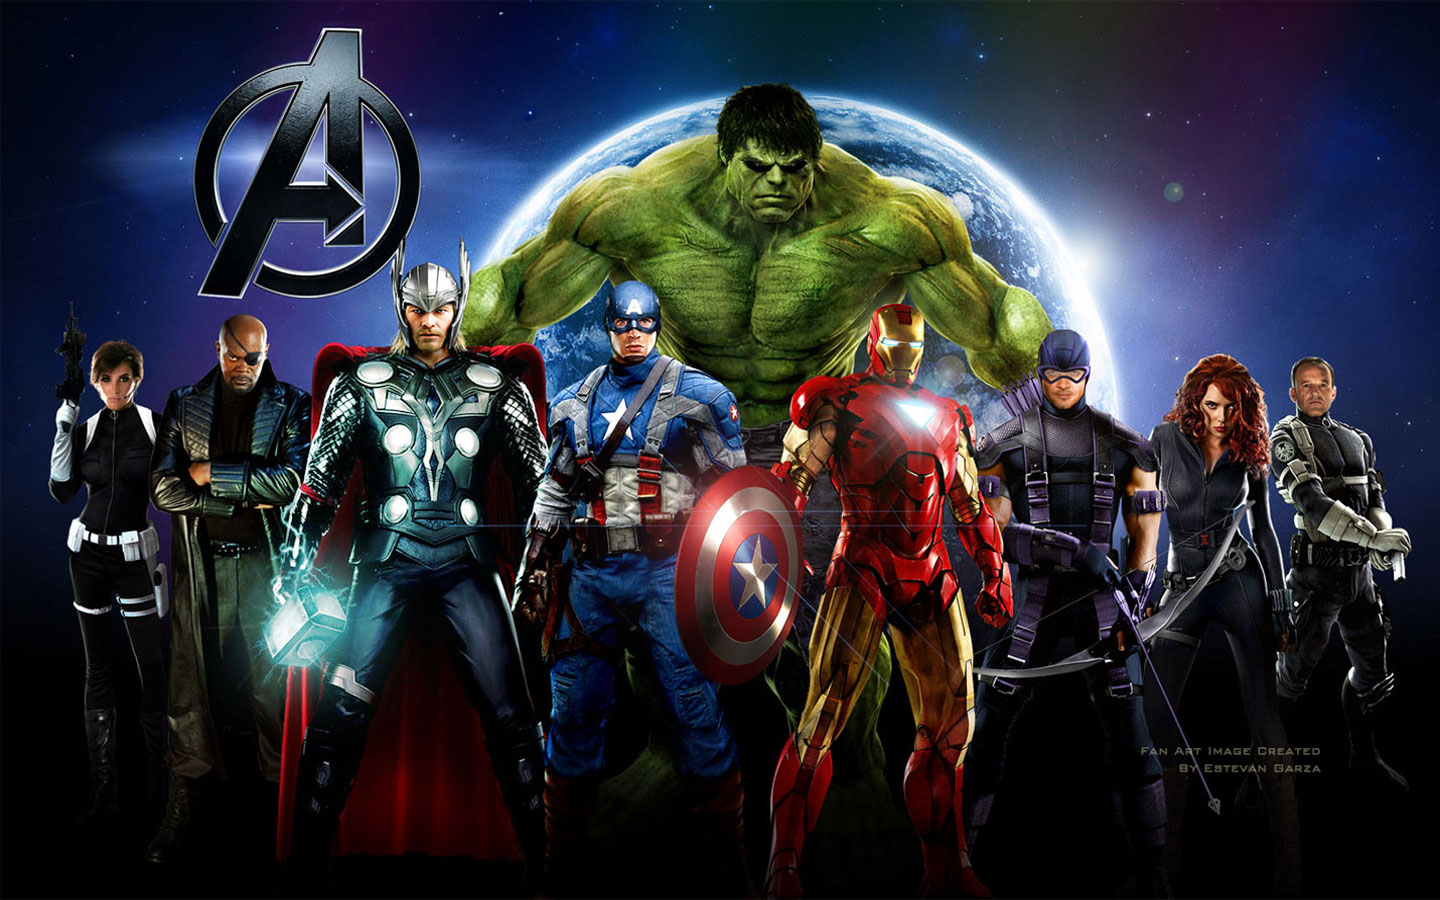 http://4.bp.blogspot.com/-S7RSFe5zh34/T60koke2_OI/AAAAAAAAAMM/IbuTa8UM1dc/s1600/The-Avengers-Movie-Widescreen-Wallpaper.jpg